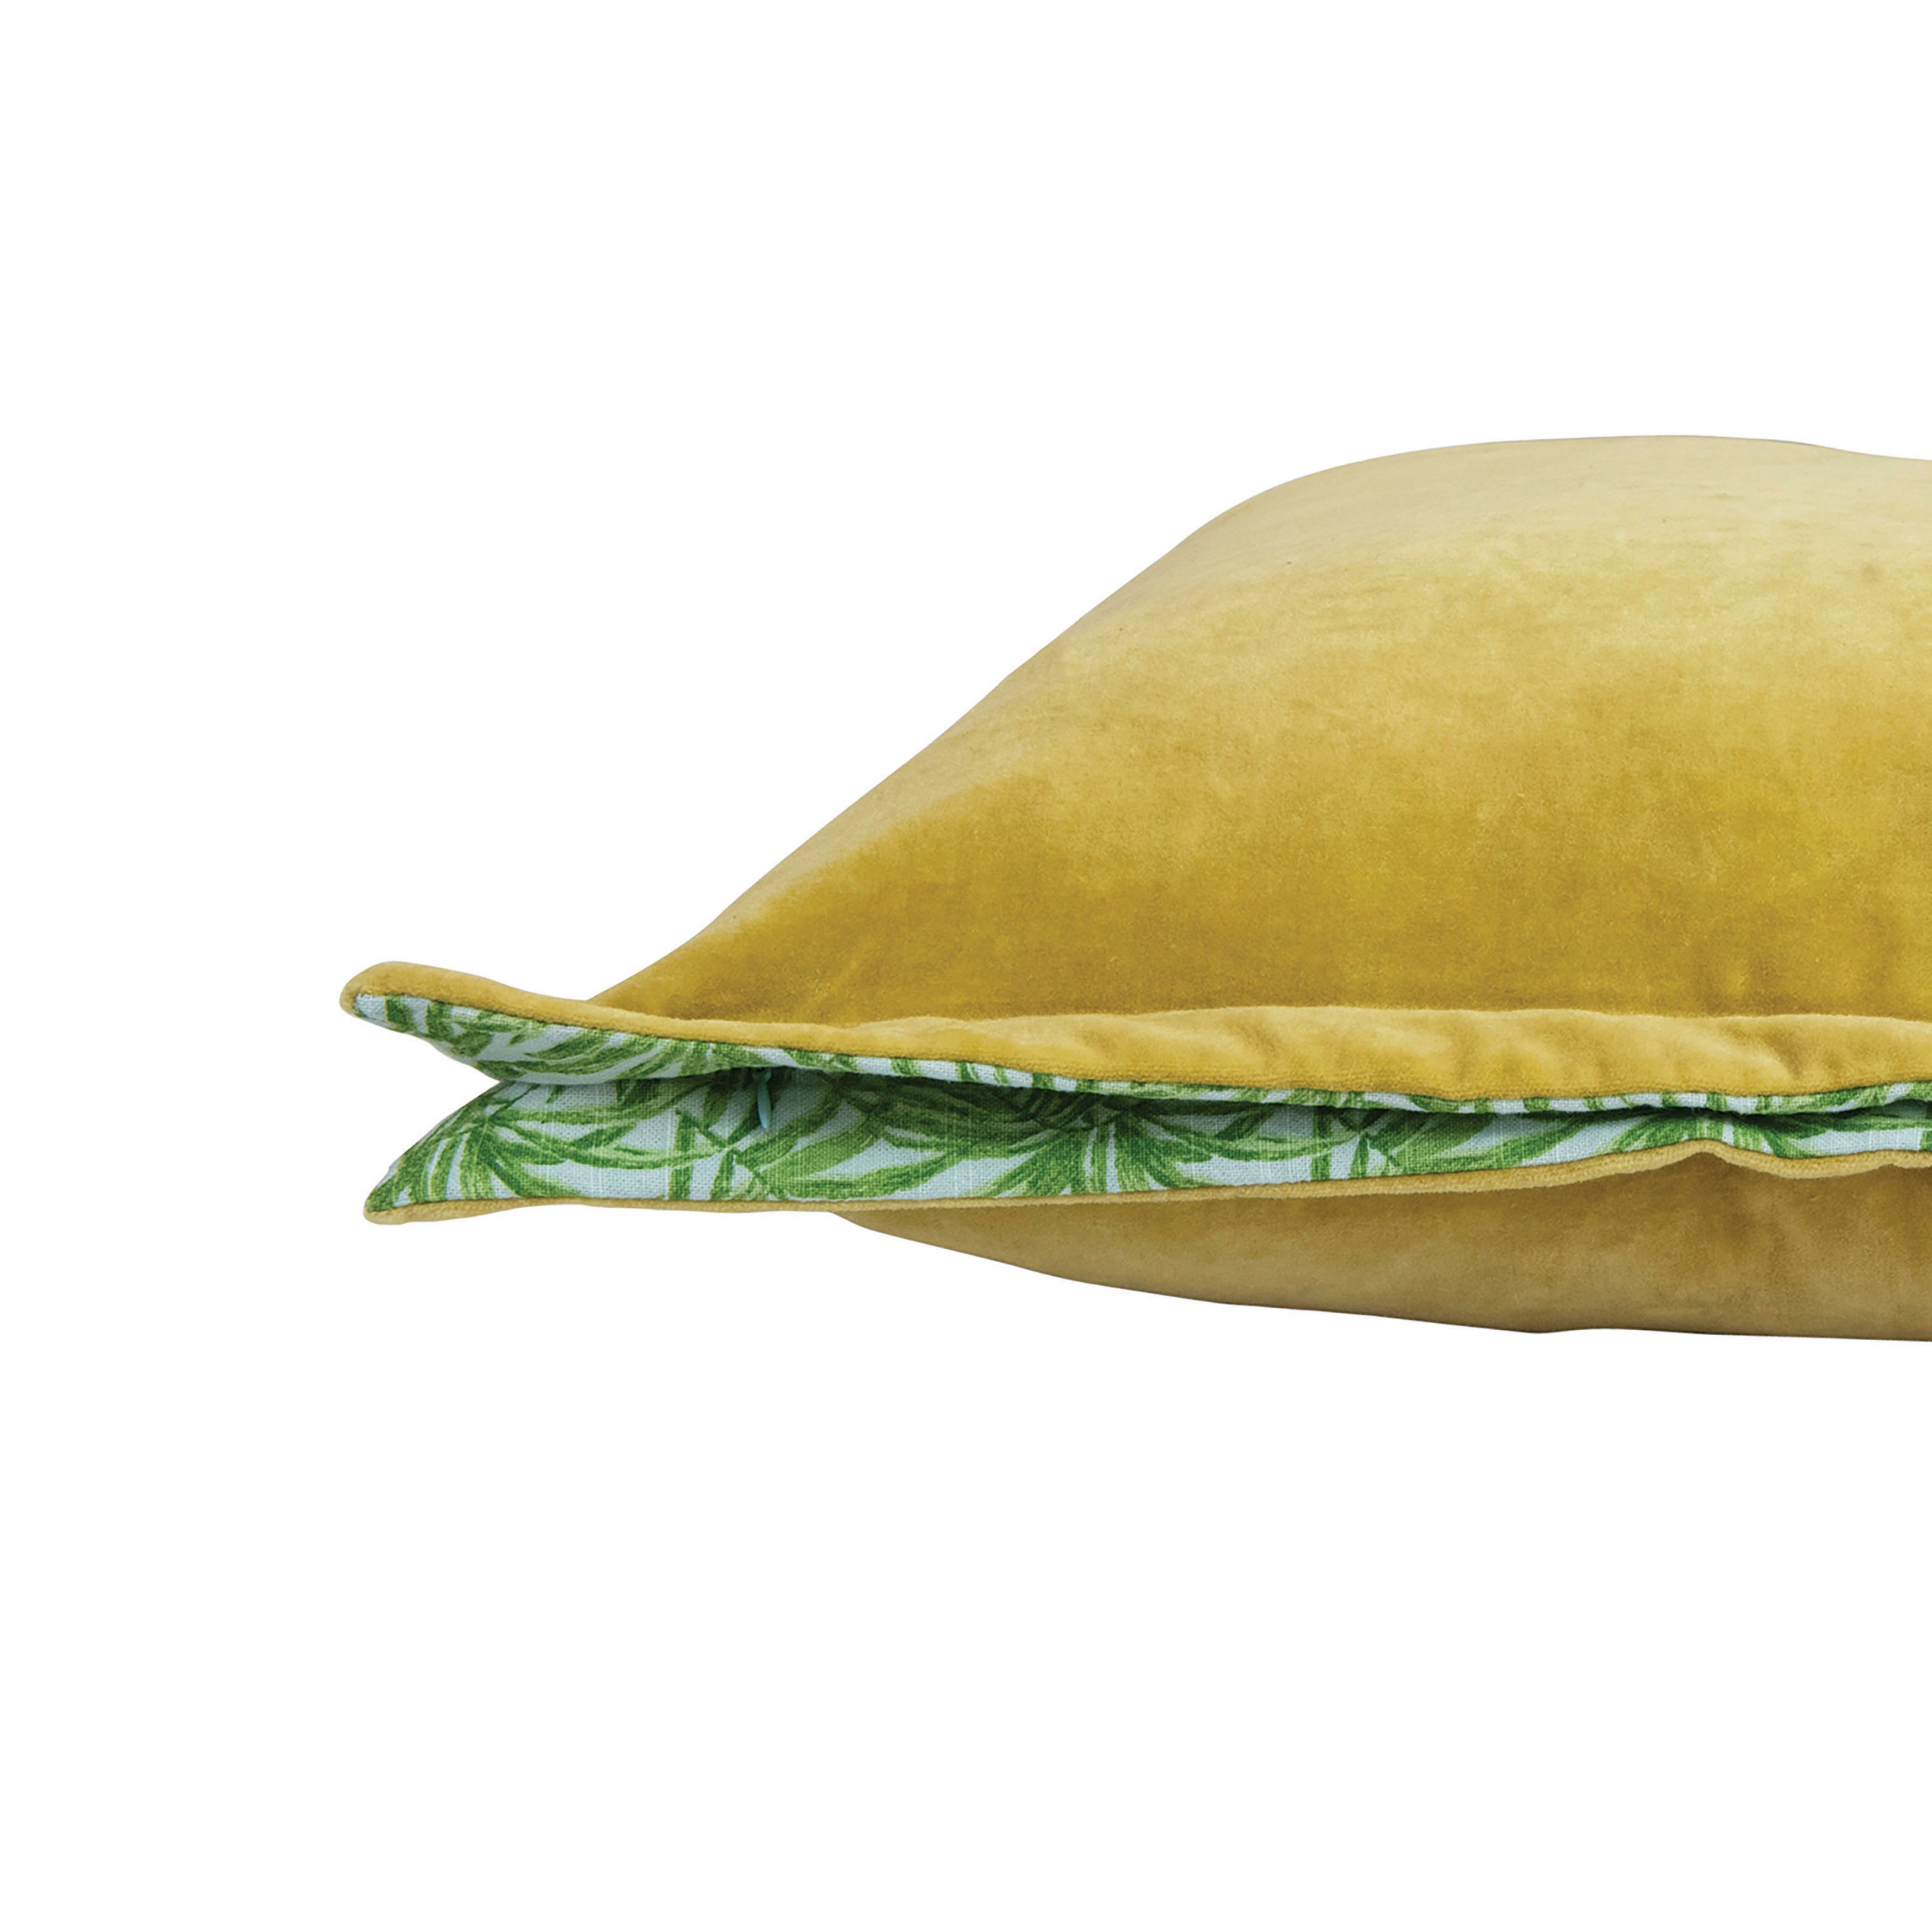 Chartreuse Velvet Pillow